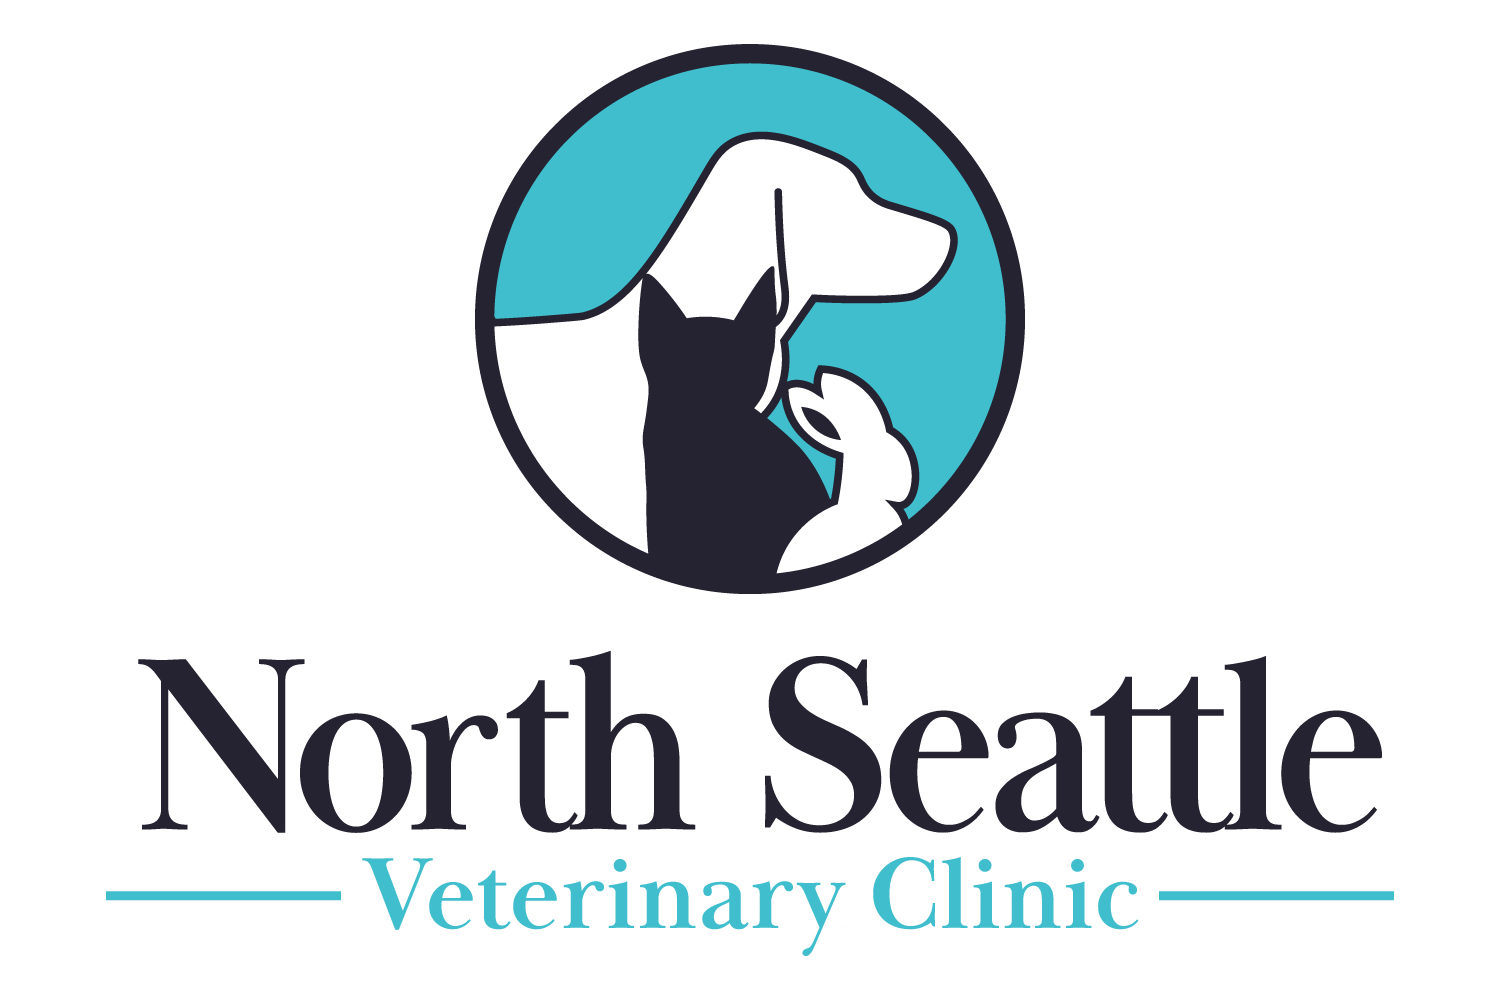 1137348 North Seattle Veterinary Clinic v2 083021 e1630682349968